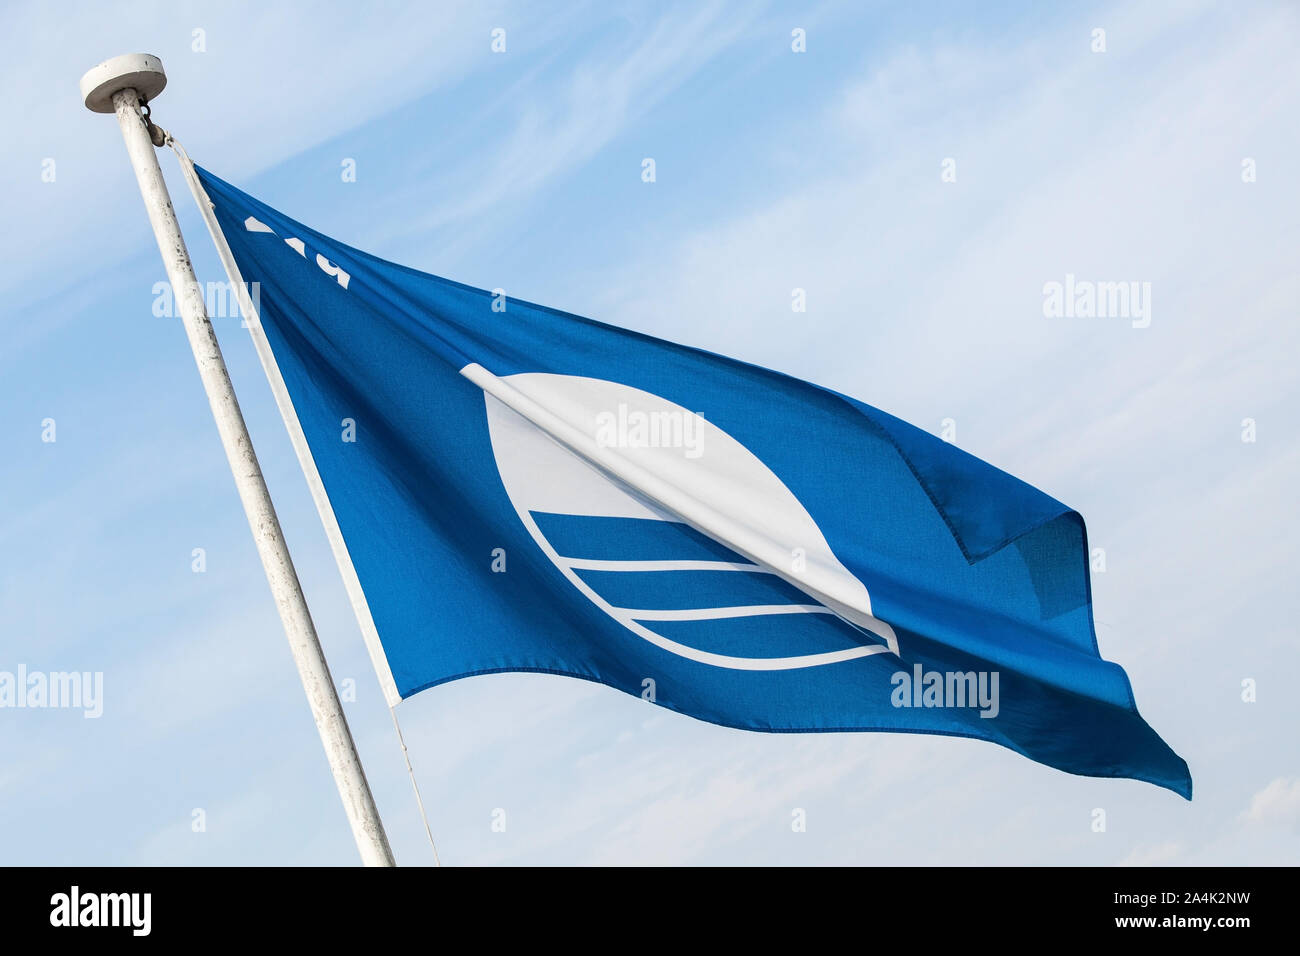 Plage Pavillon bleu. Photo en gros plan des drapeaux sous blue cloudy sky Banque D'Images